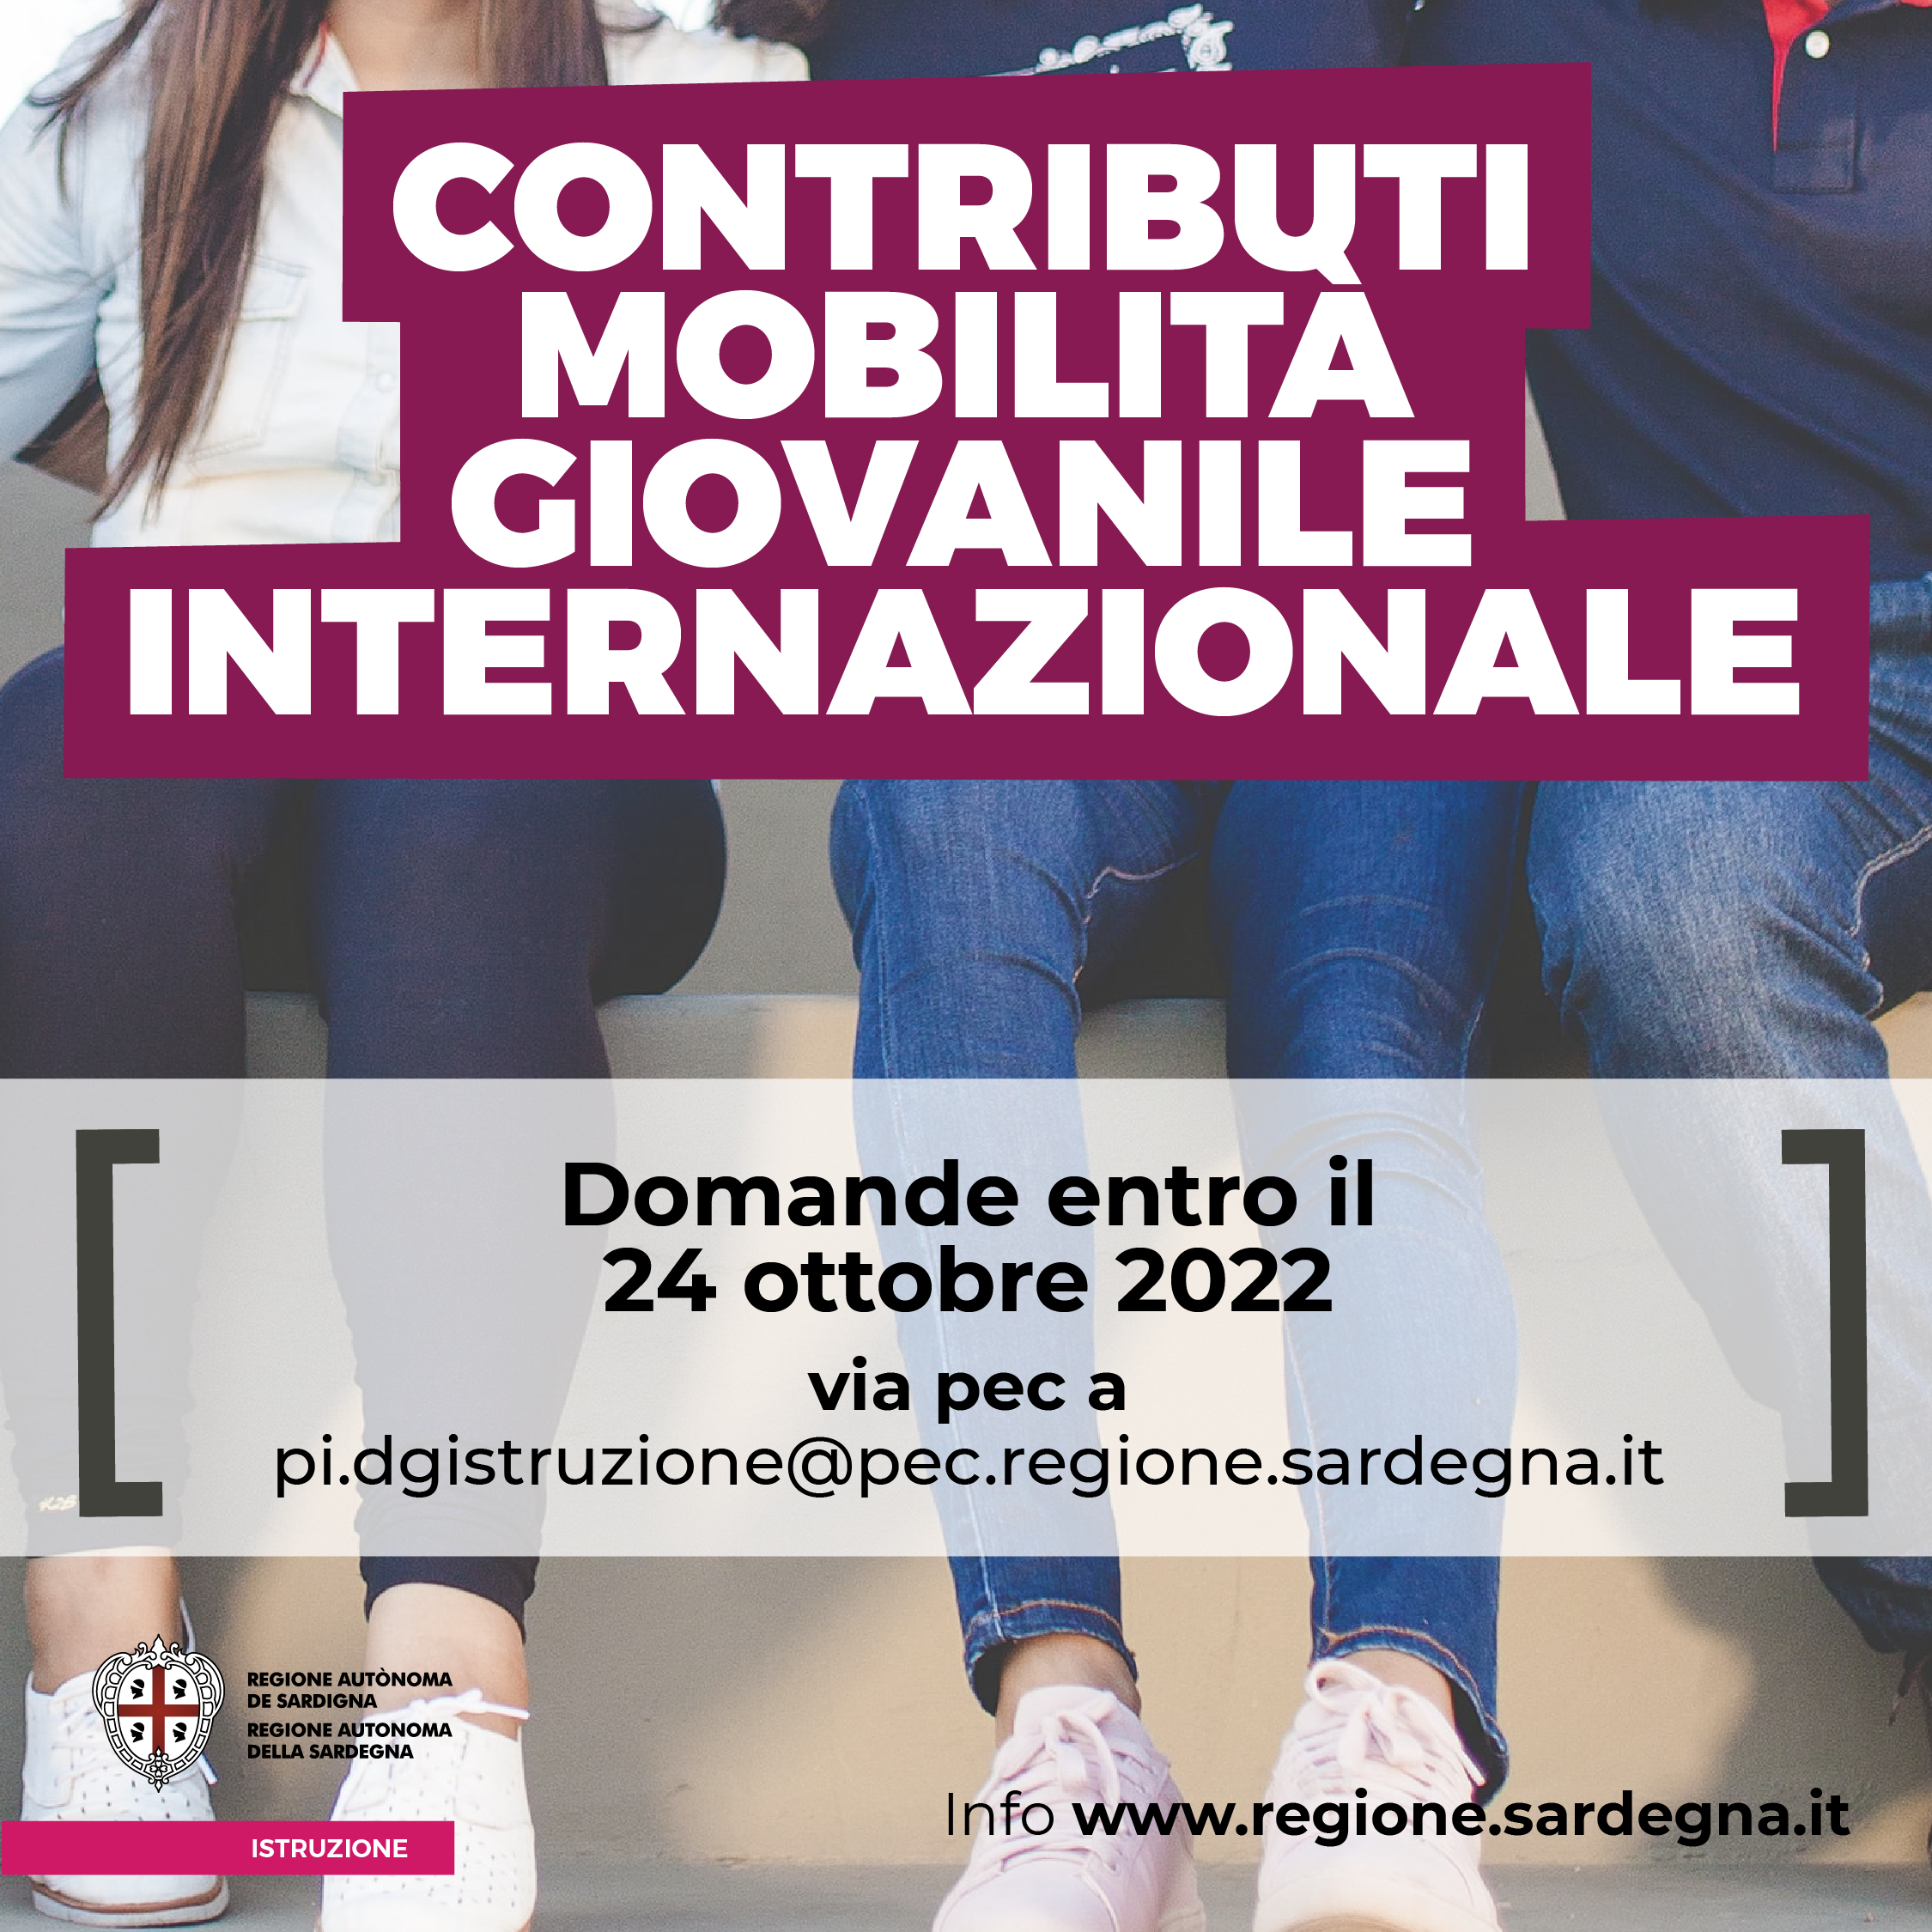 Mobilità internazionale